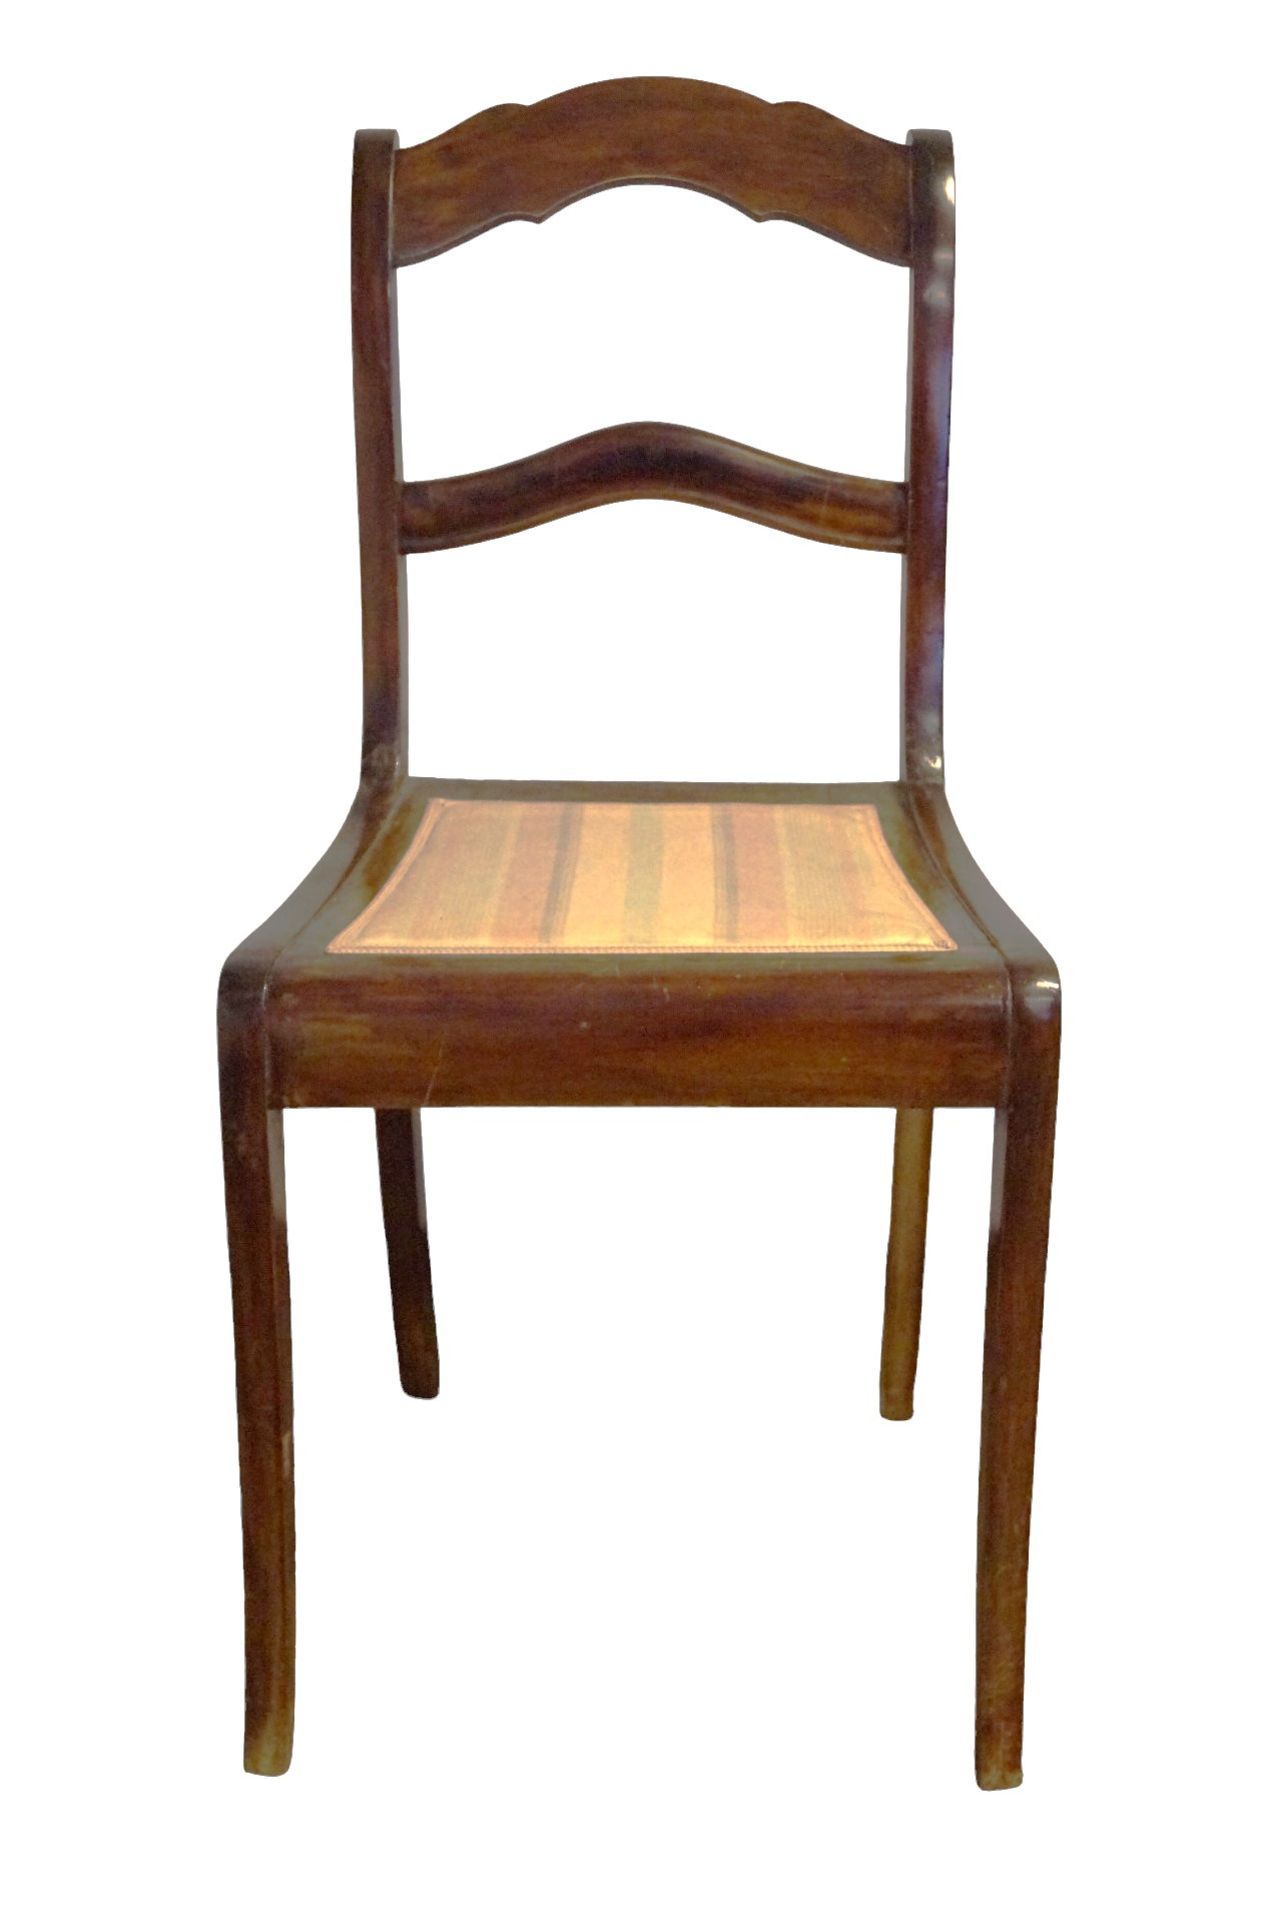 6 Stühle im Biedermeierstil; wohl um 1890; Nussbaum, teilmassiv; Sitzflächen gepolstert und überwie - Bild 3 aus 4